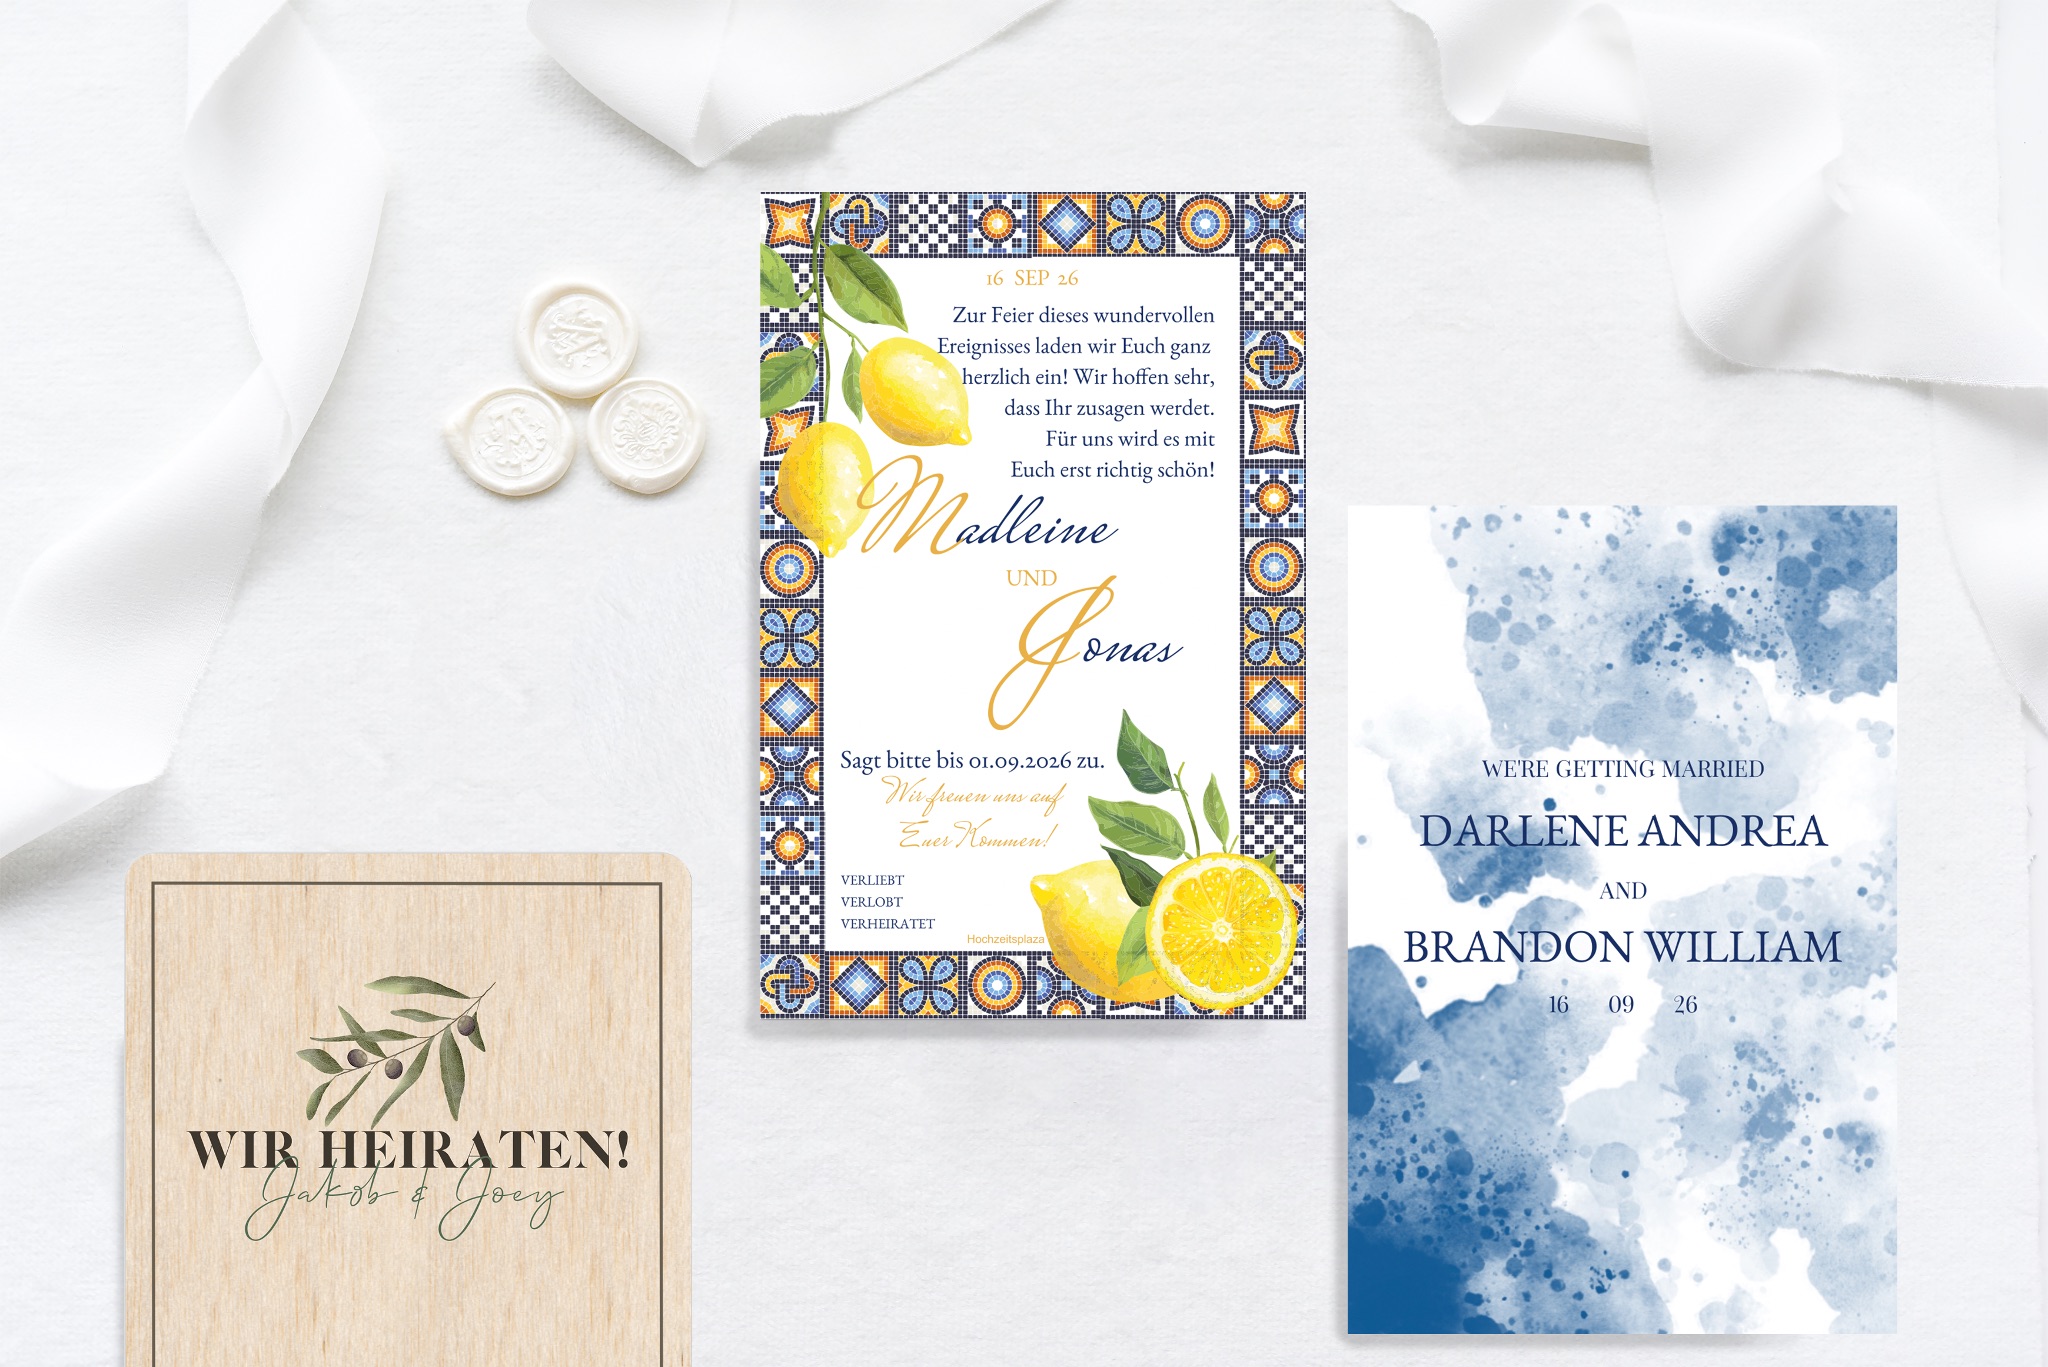 Einladungstexte für die Hochzeitsfeier auf unterschiedlichen Einladungskarten zur Hochzeit